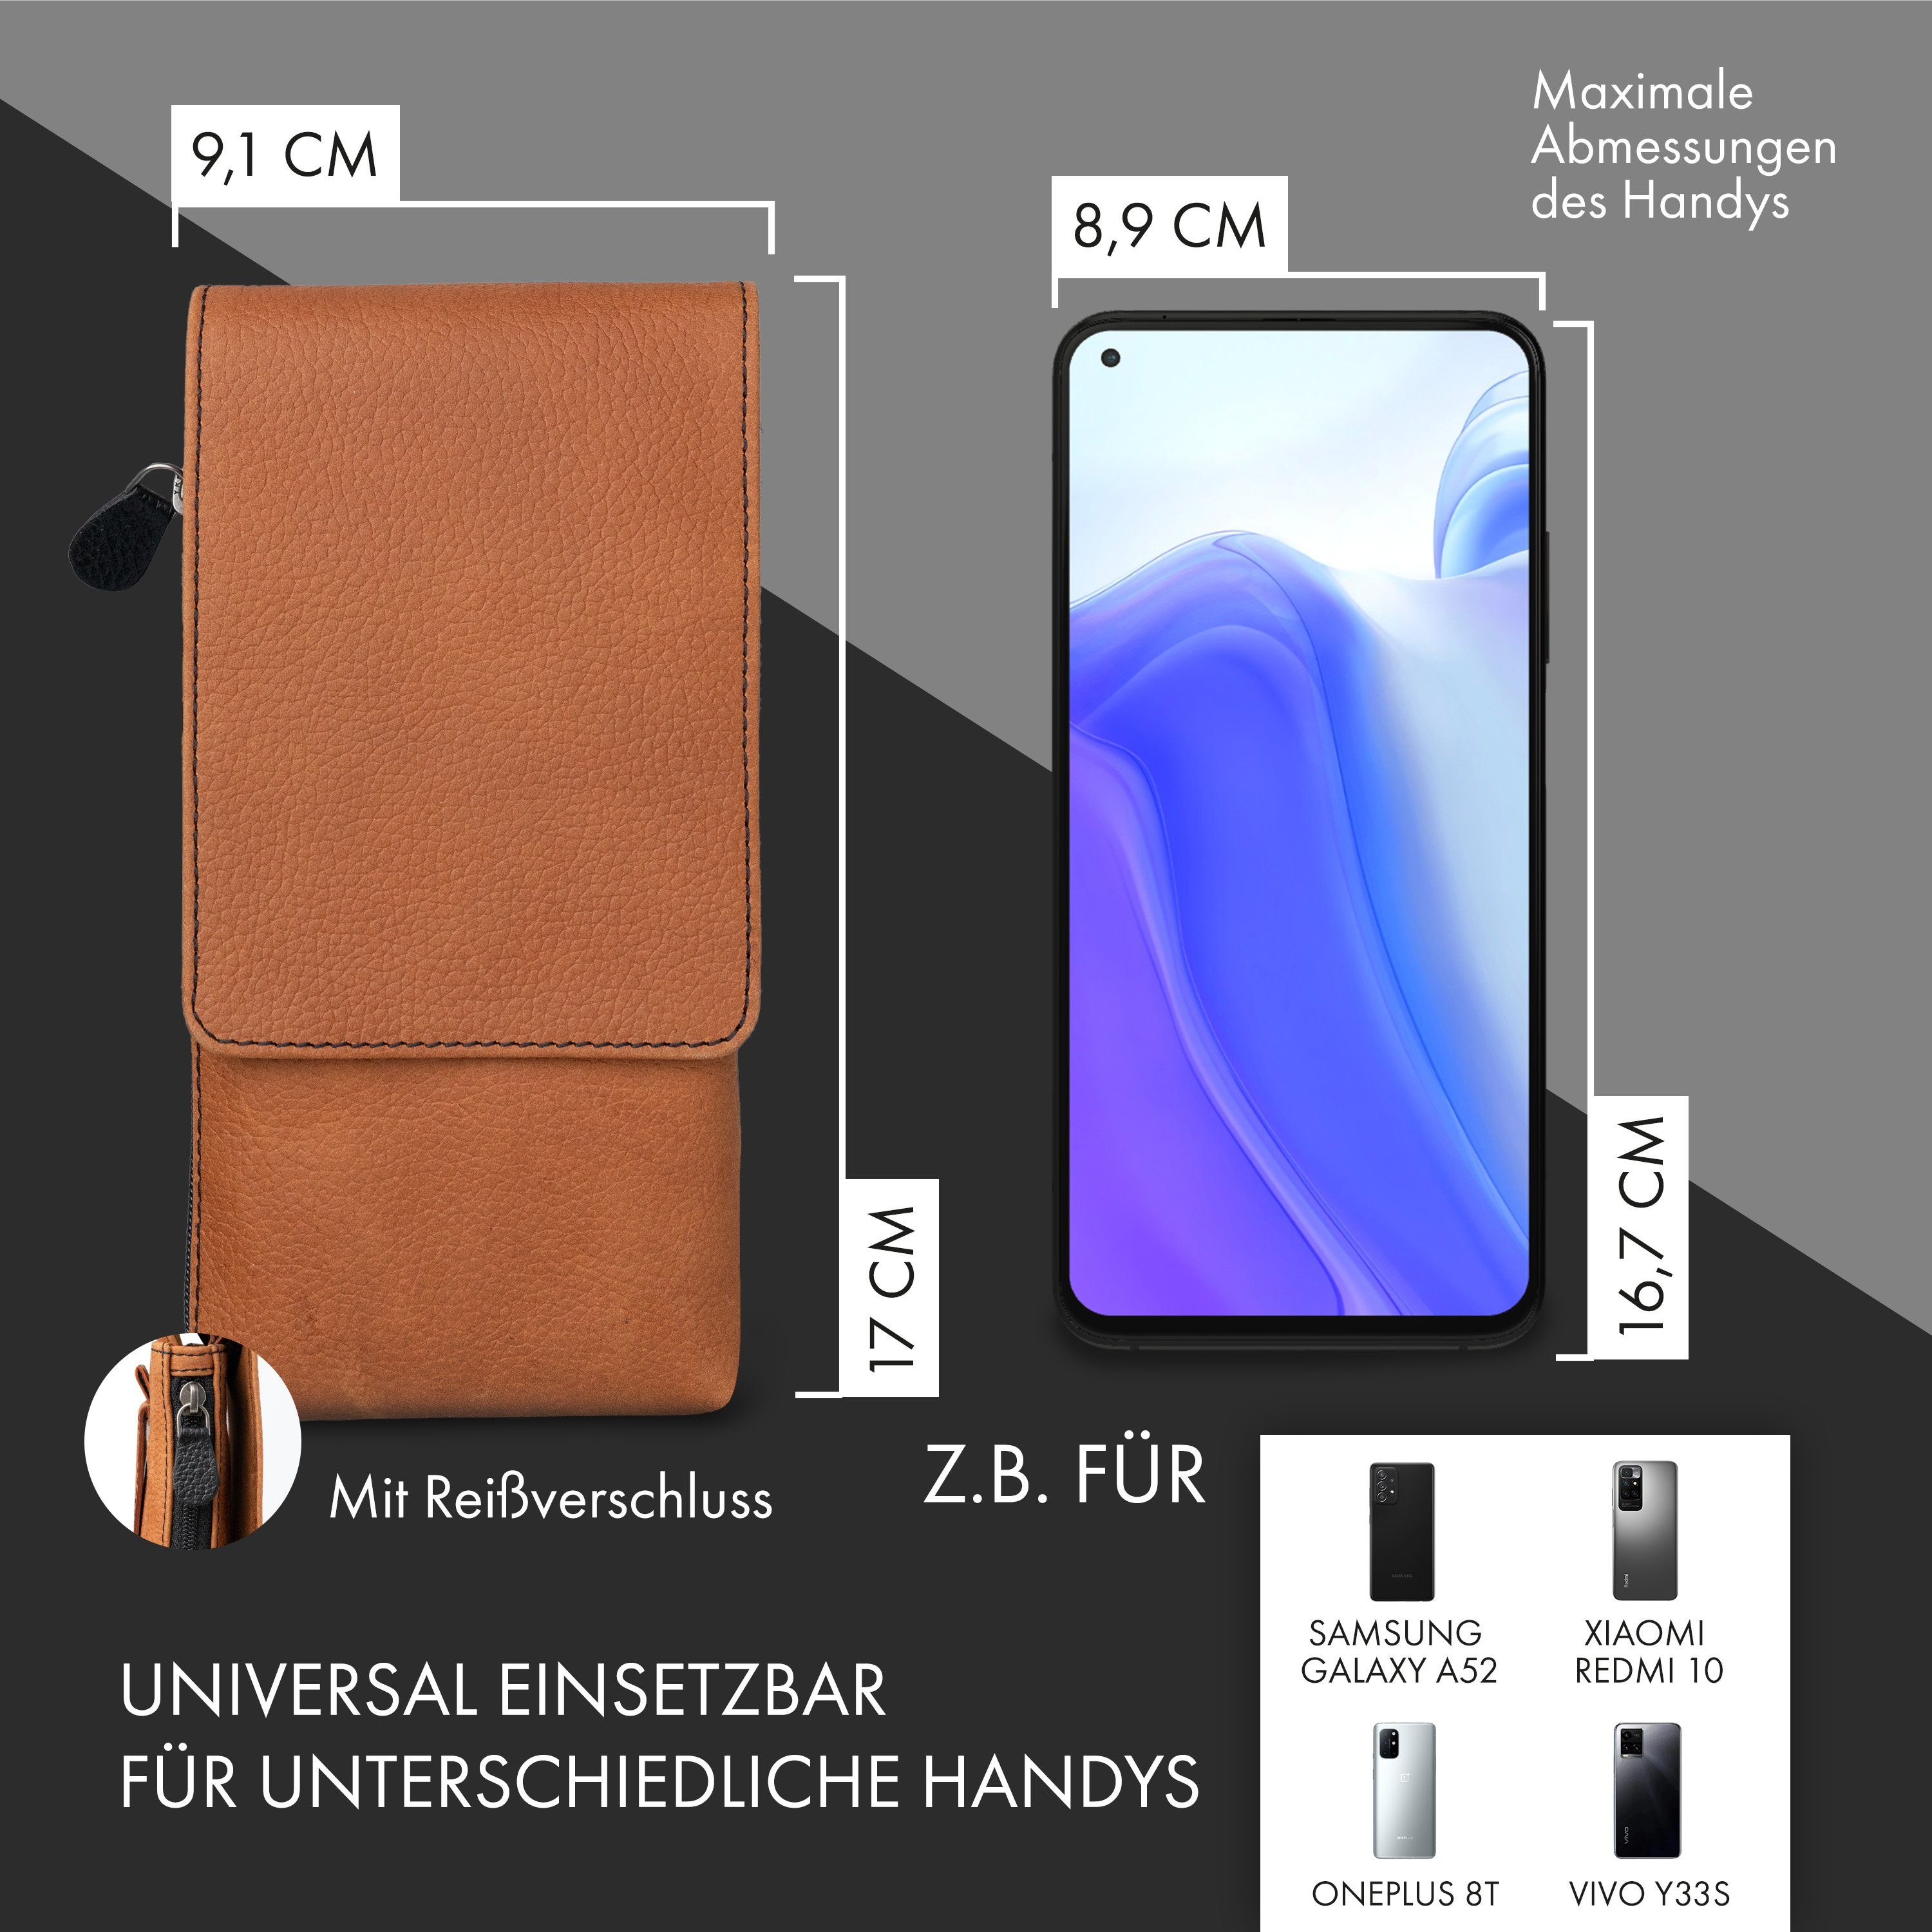 XiRRiX Handytasche Smartphone Umhängetasche aus Leder mit  Reissverschlußfach, echt Leder